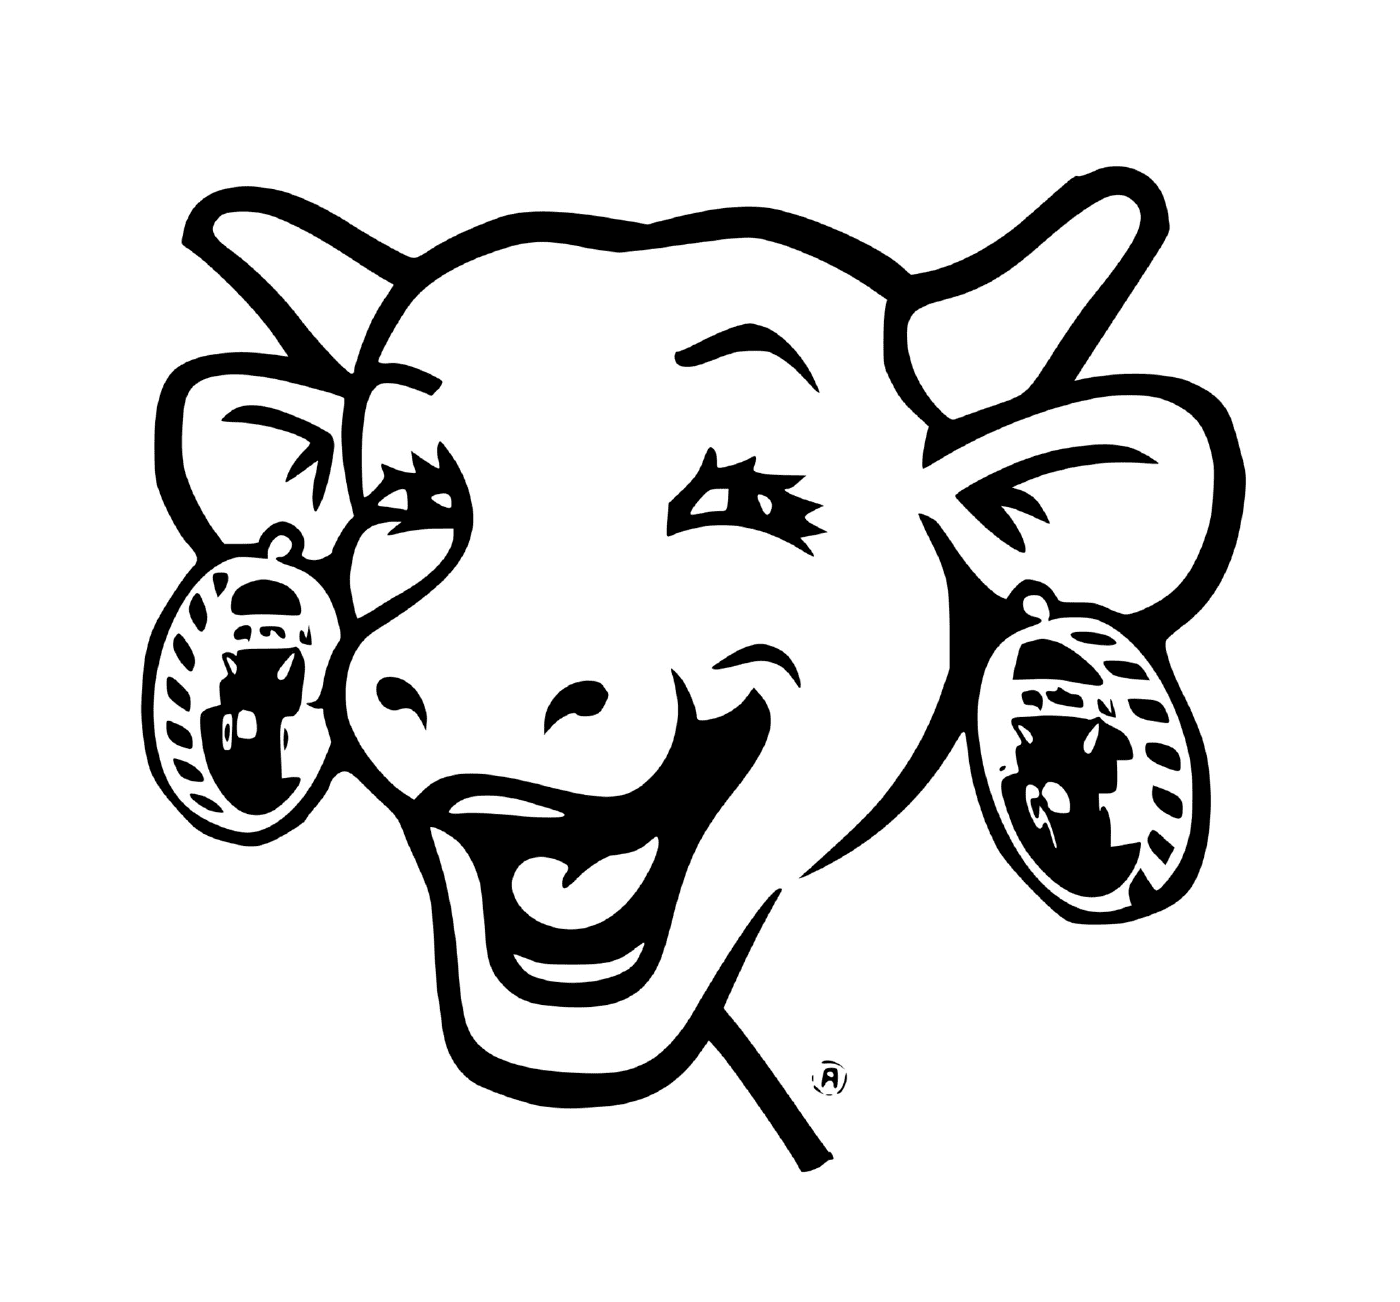  La vaca sonriente 